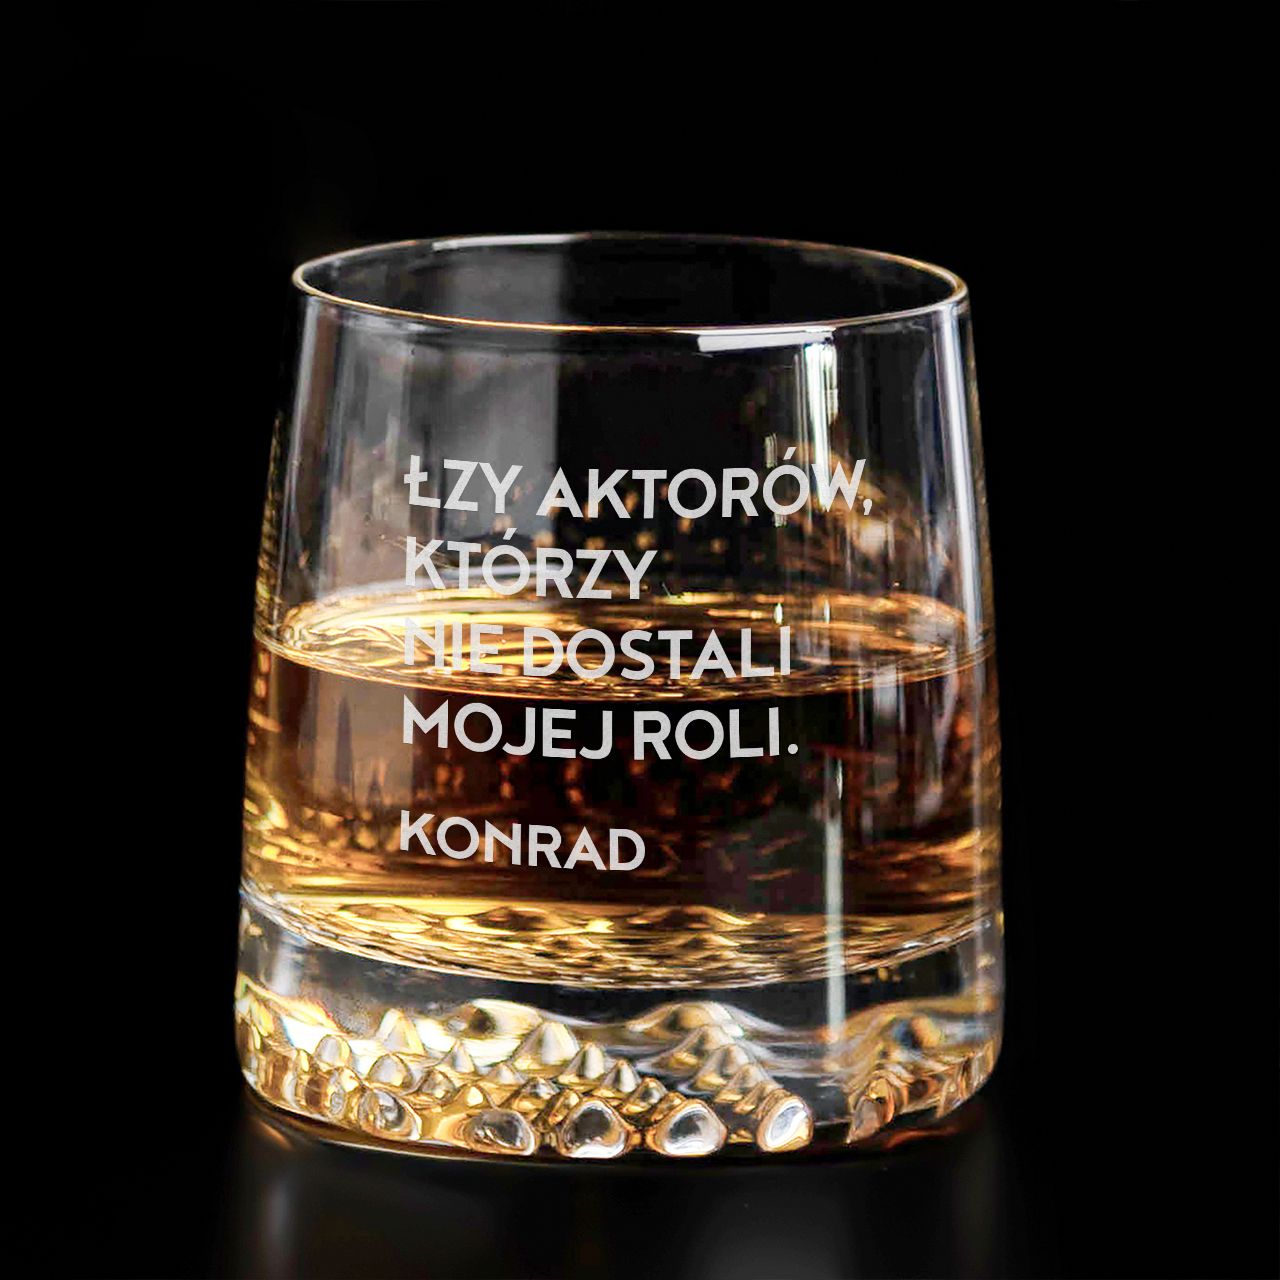 Elegancka szklanka do whisky PREZENT DLA AKTORA NA URODZINY